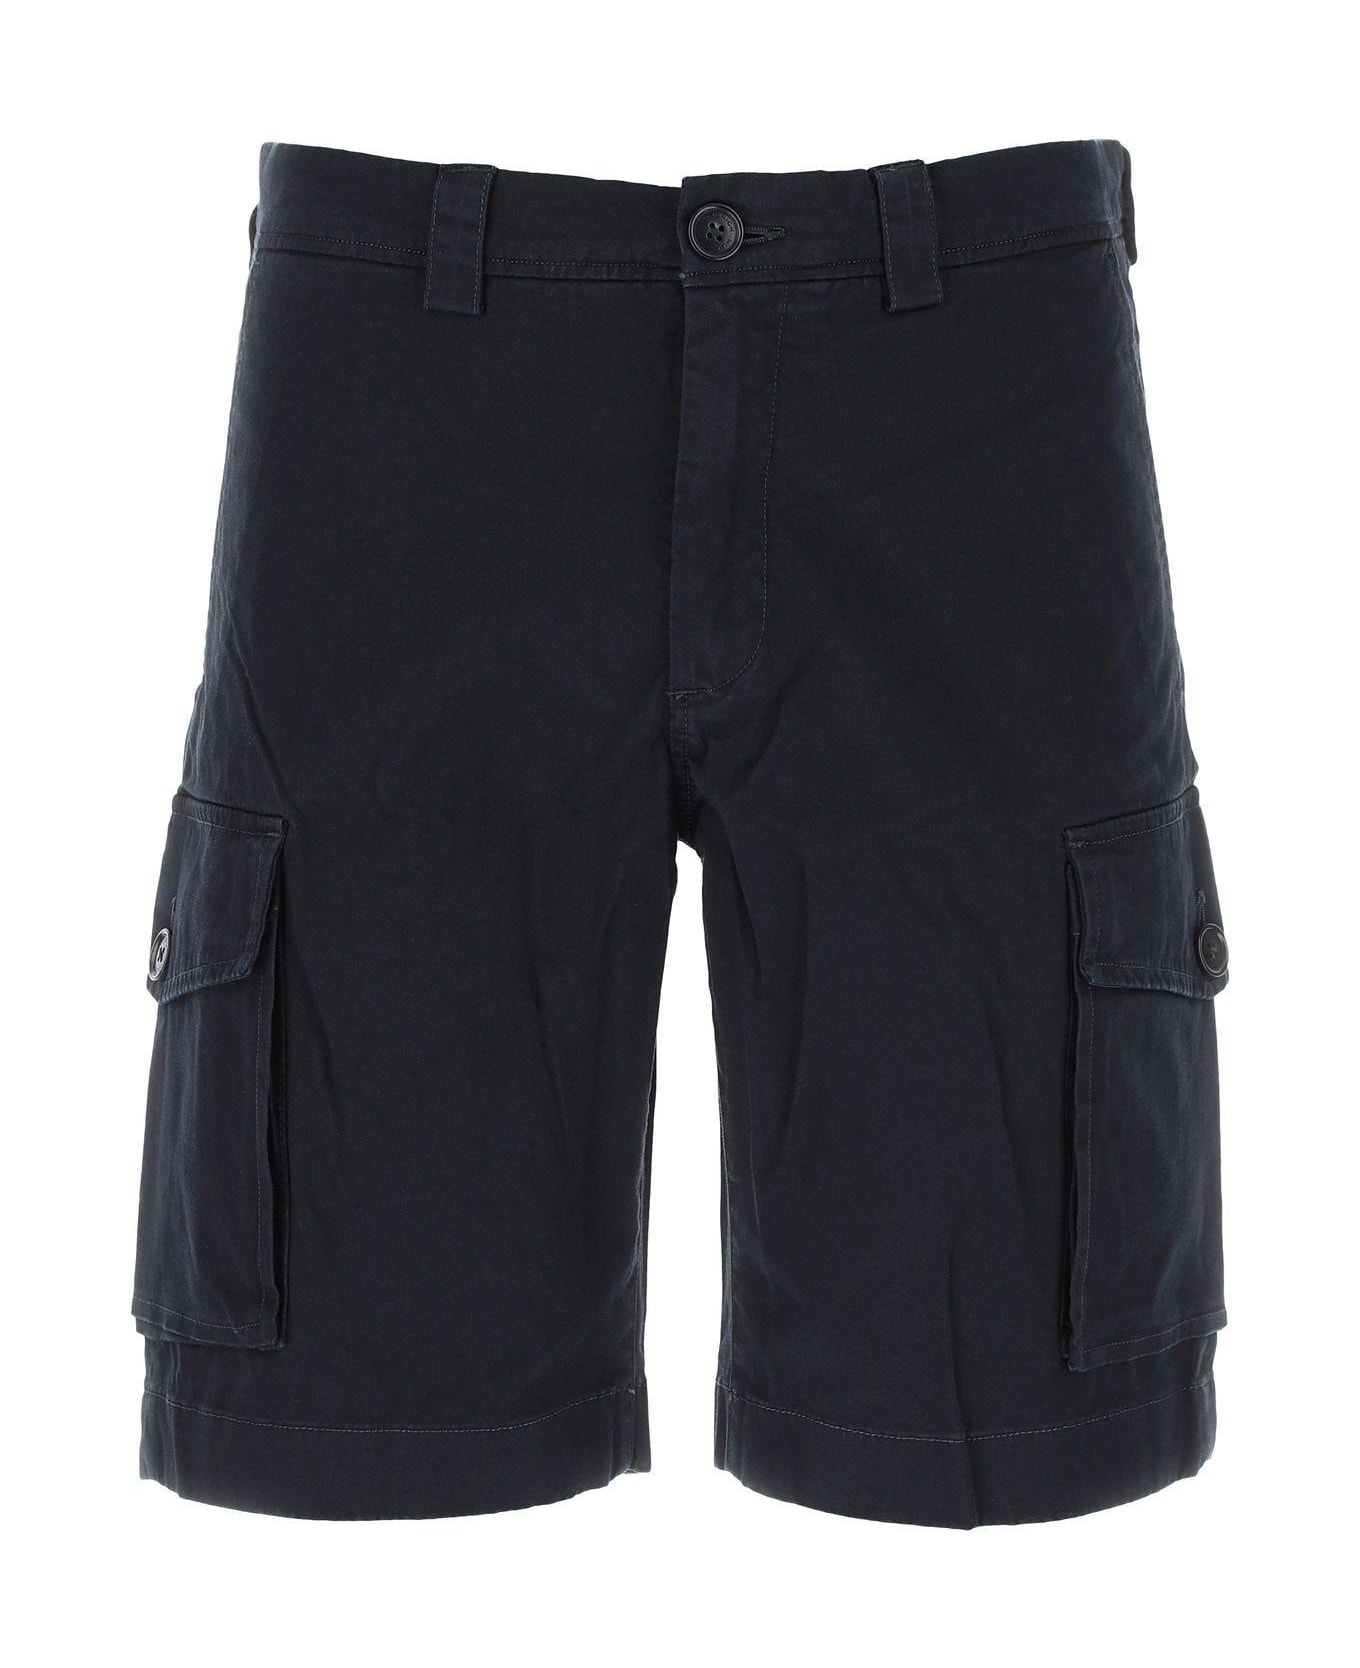 Woolrich Navy Blue Stretch Cotton Bermuda Shorts - NAVY